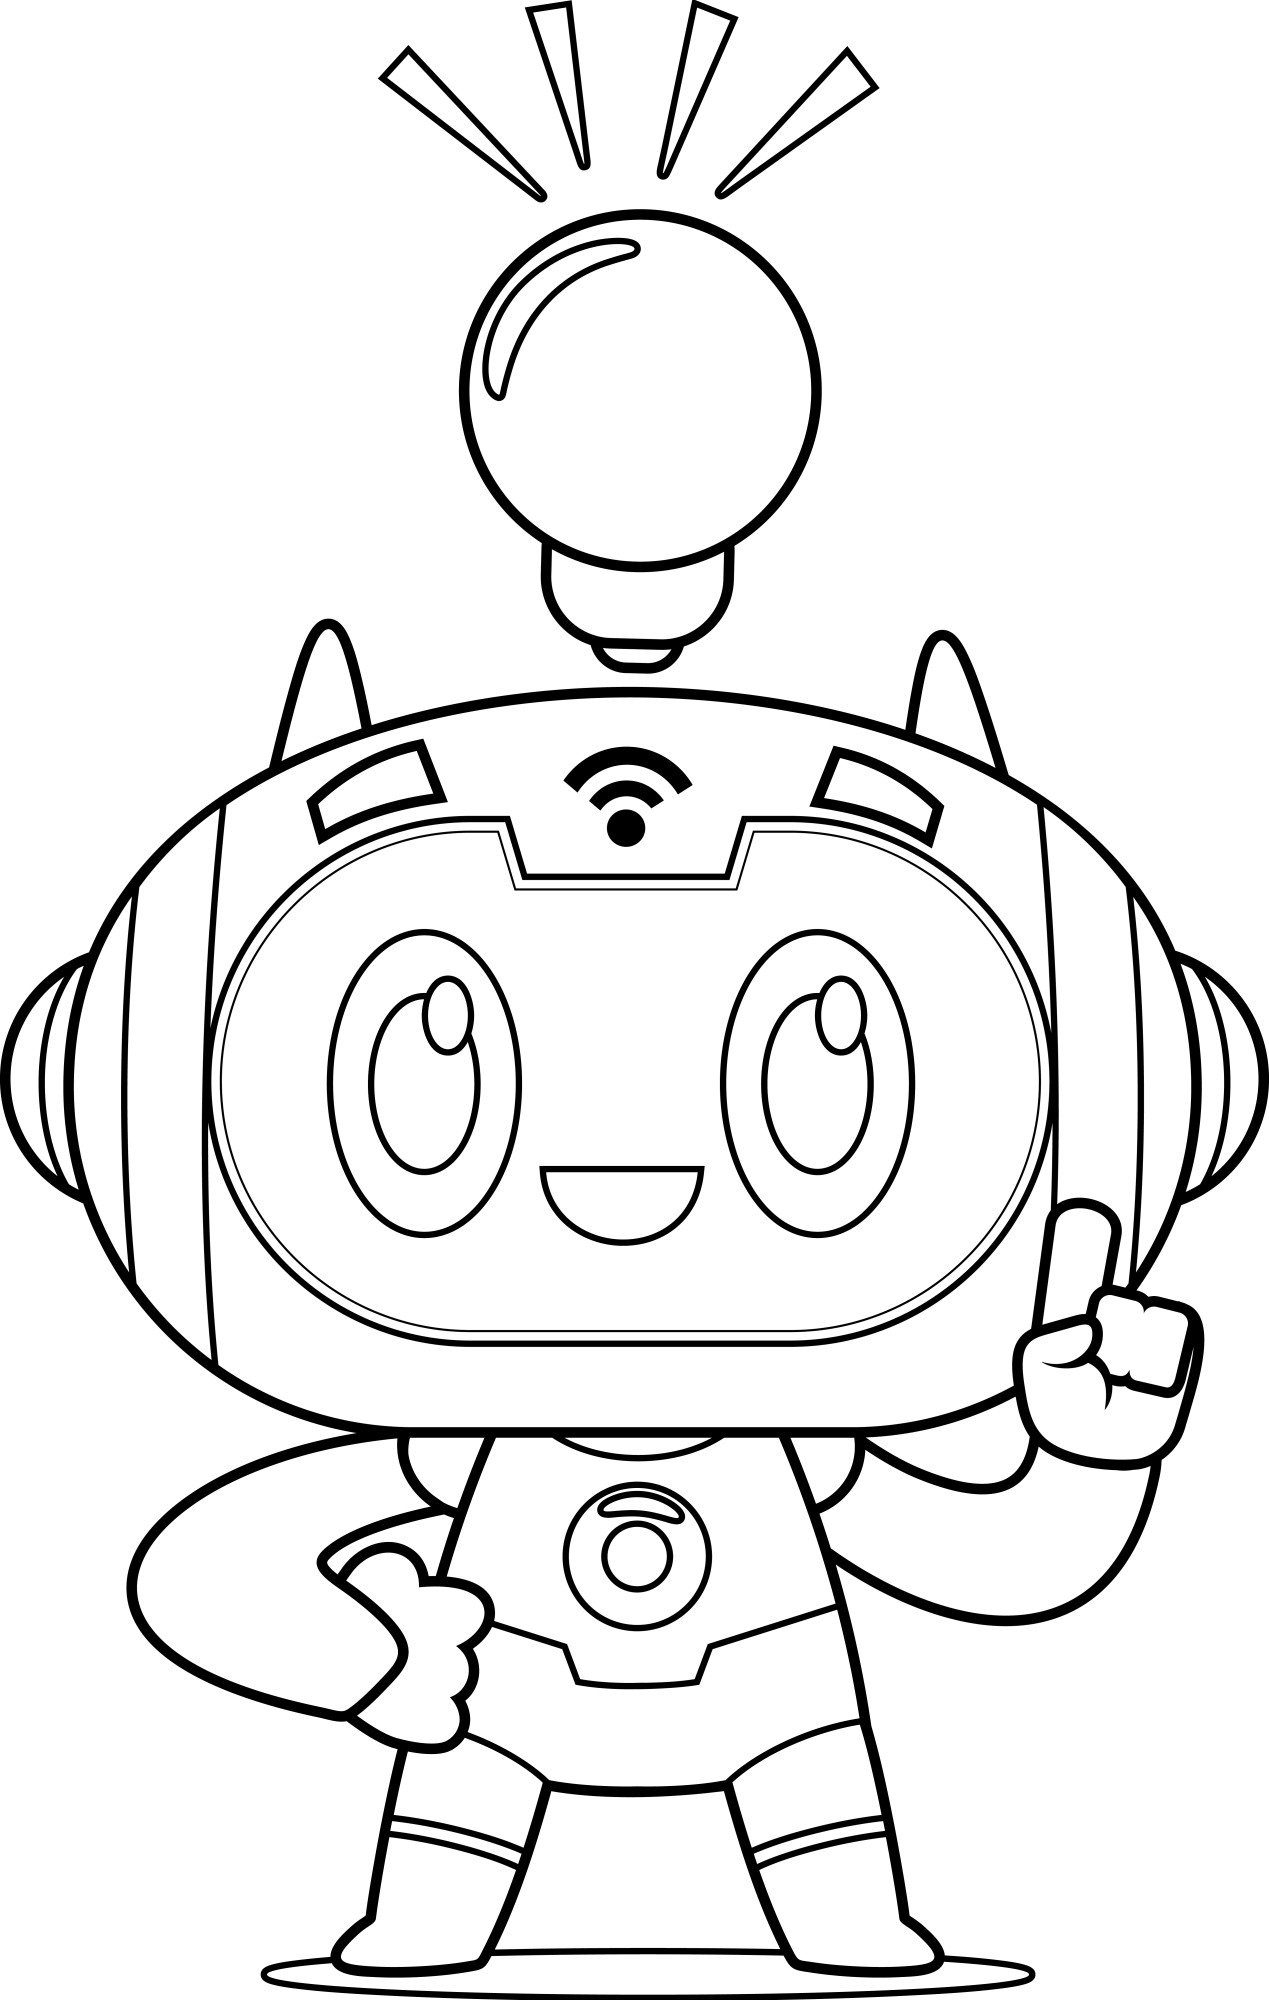 Раскраска для детей: идейный робот